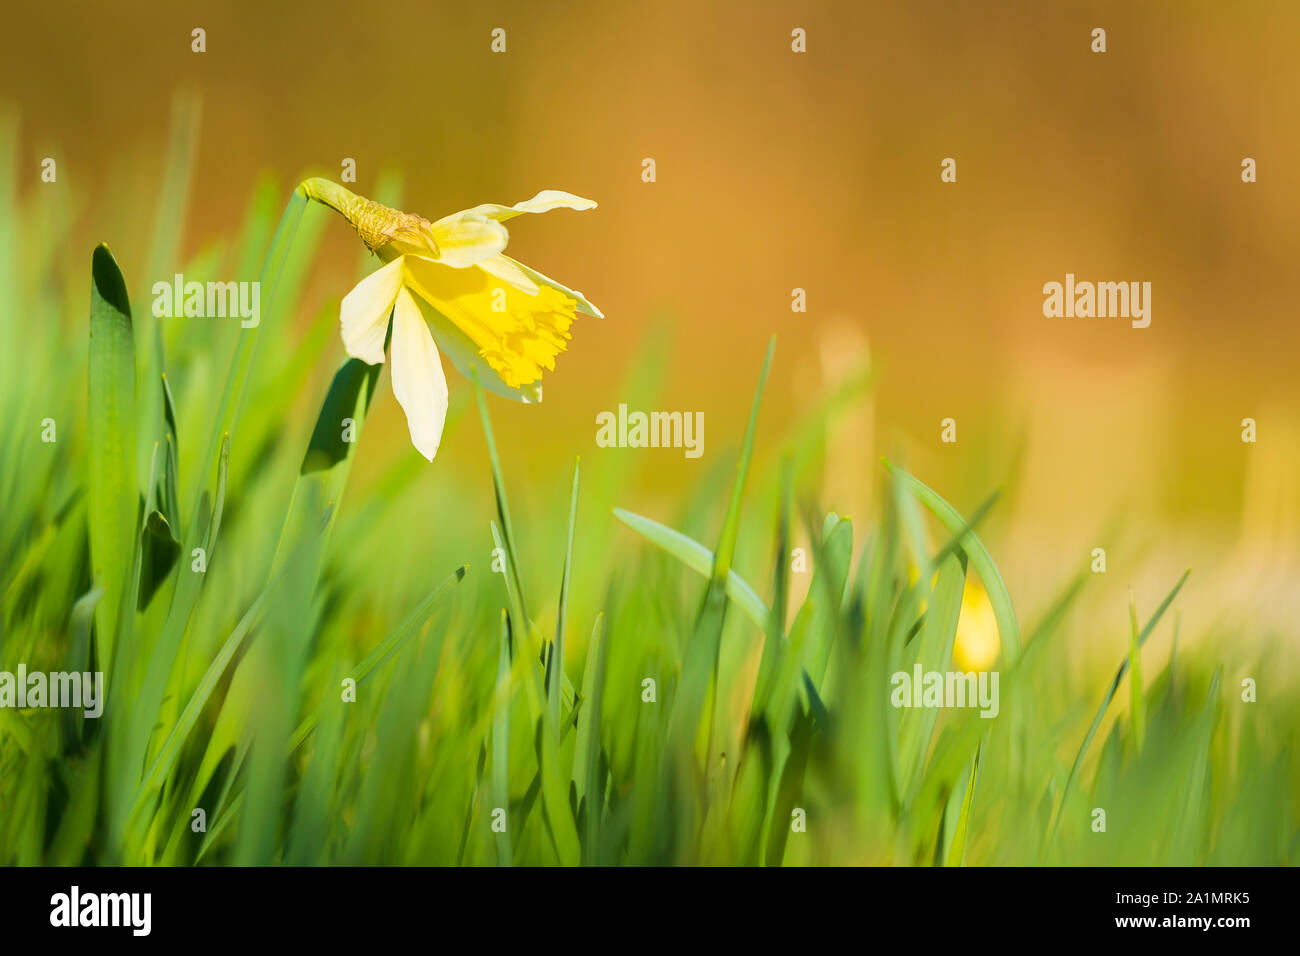 Gelbe narzisse Blume oder Fastenzeit Lily, Narcissus pseudonarcissus, blühen in einer grünen Wiese im Frühling an einem sonnigen Tag und dem klaren, blauen Himmel. Stockfoto